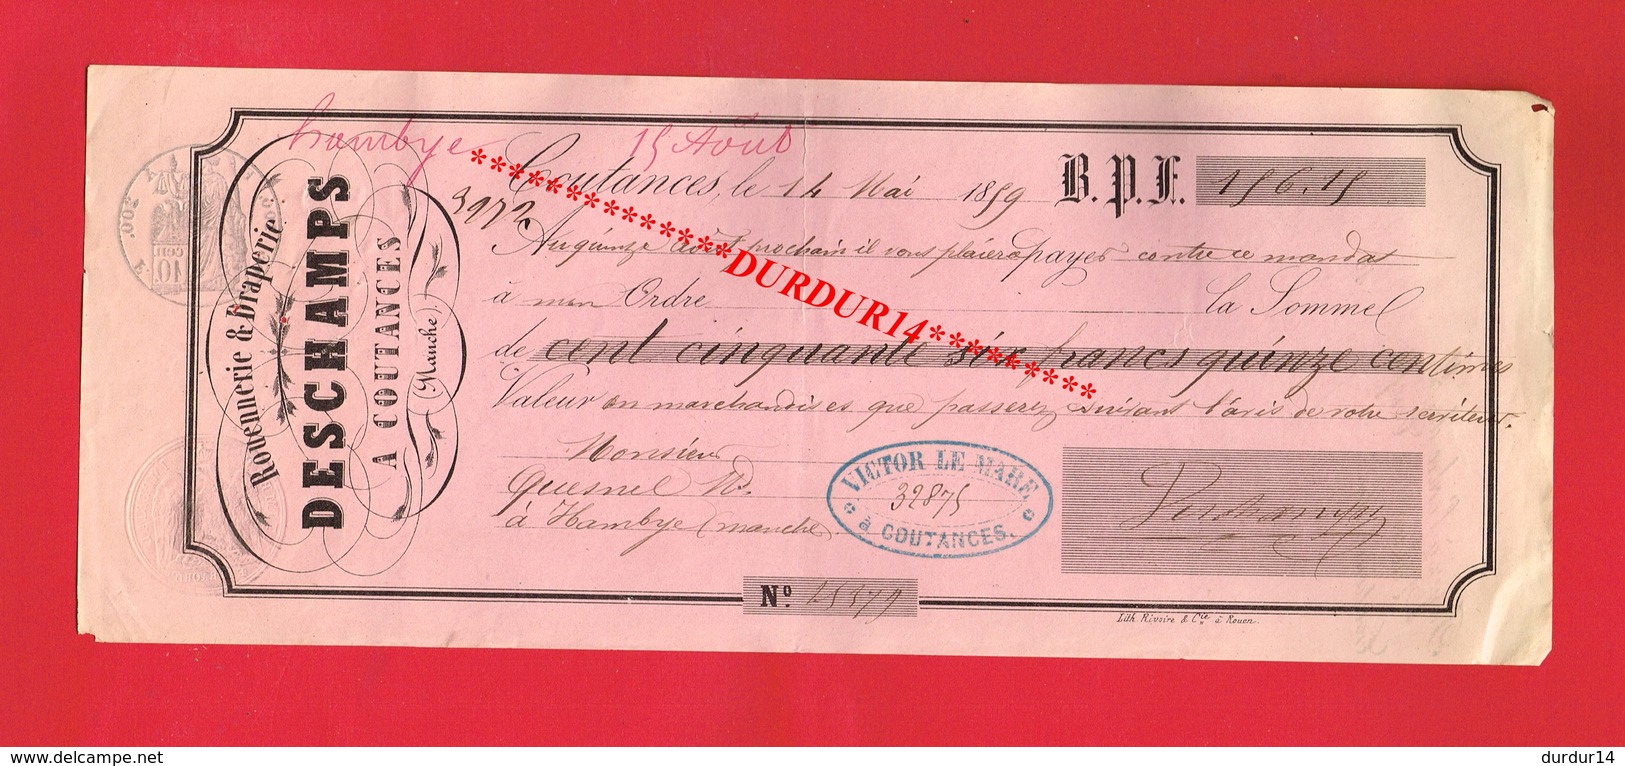 1 Lettre De Change & COUTANCES DESCHAMPS Rouennerie Draperie 1859 - Wissels